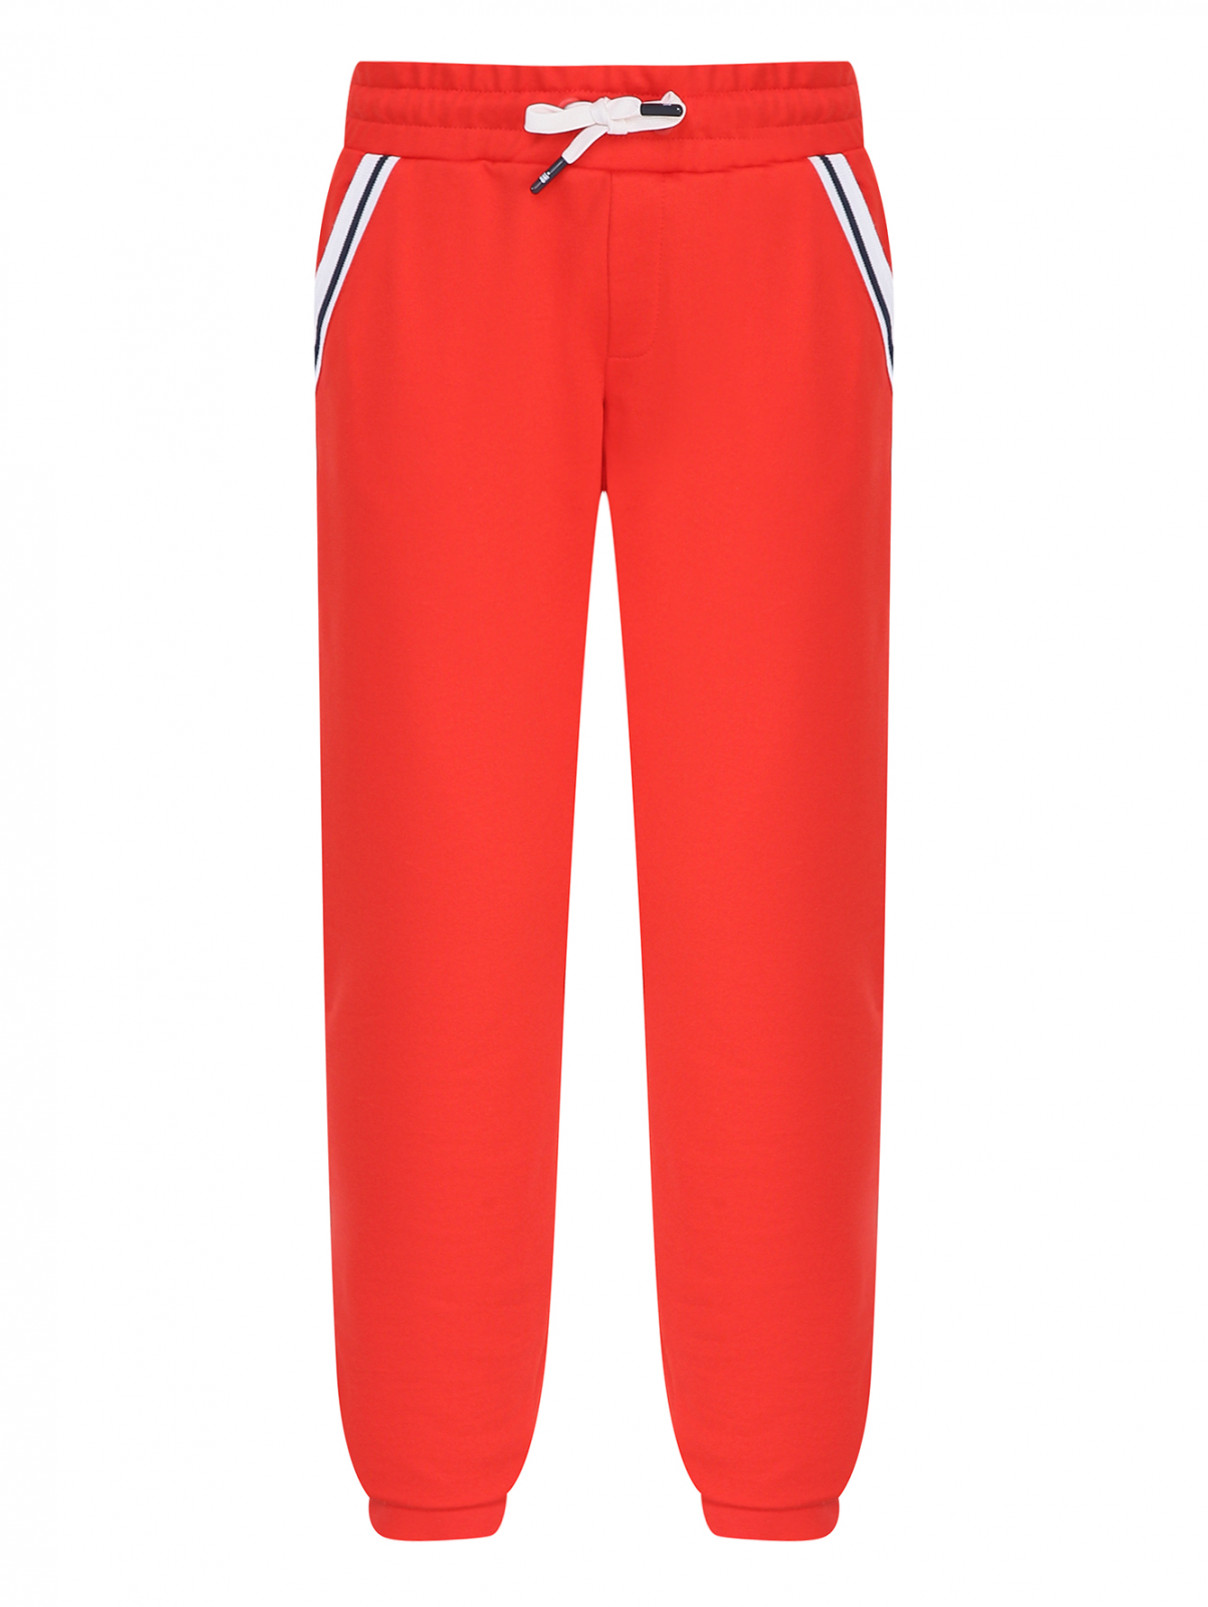 Трикотажные брюки на резинке Bikkembergs  –  Общий вид  – Цвет:  Красный